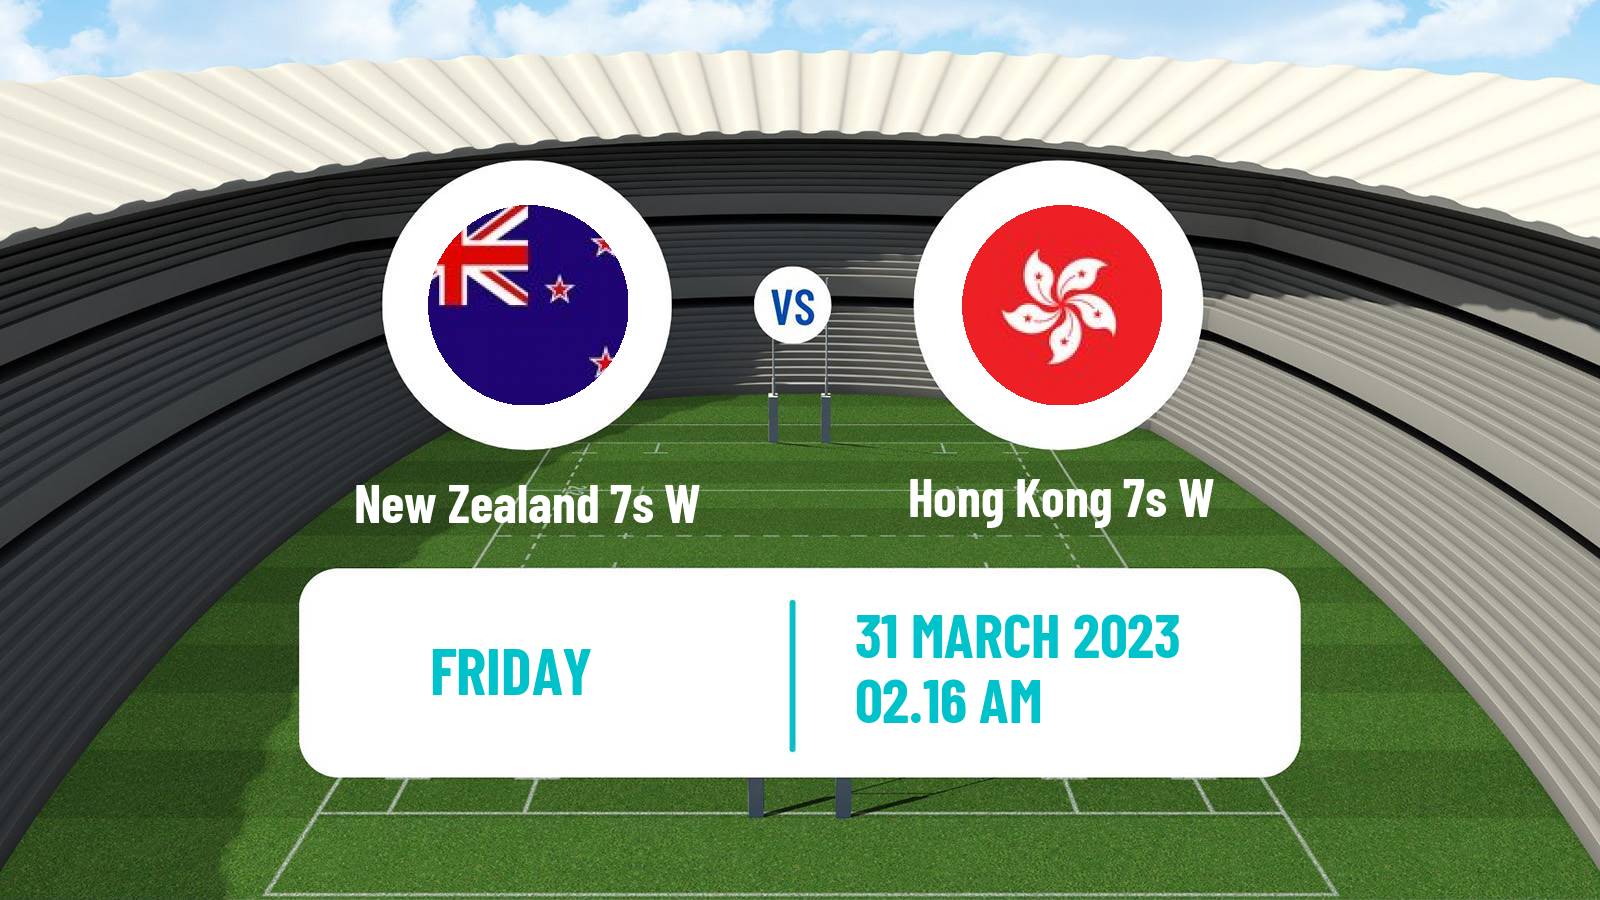 Rugby union Sevens World Series Women - Hong Kong New Zealand 7s W - Hong Kong 7s W